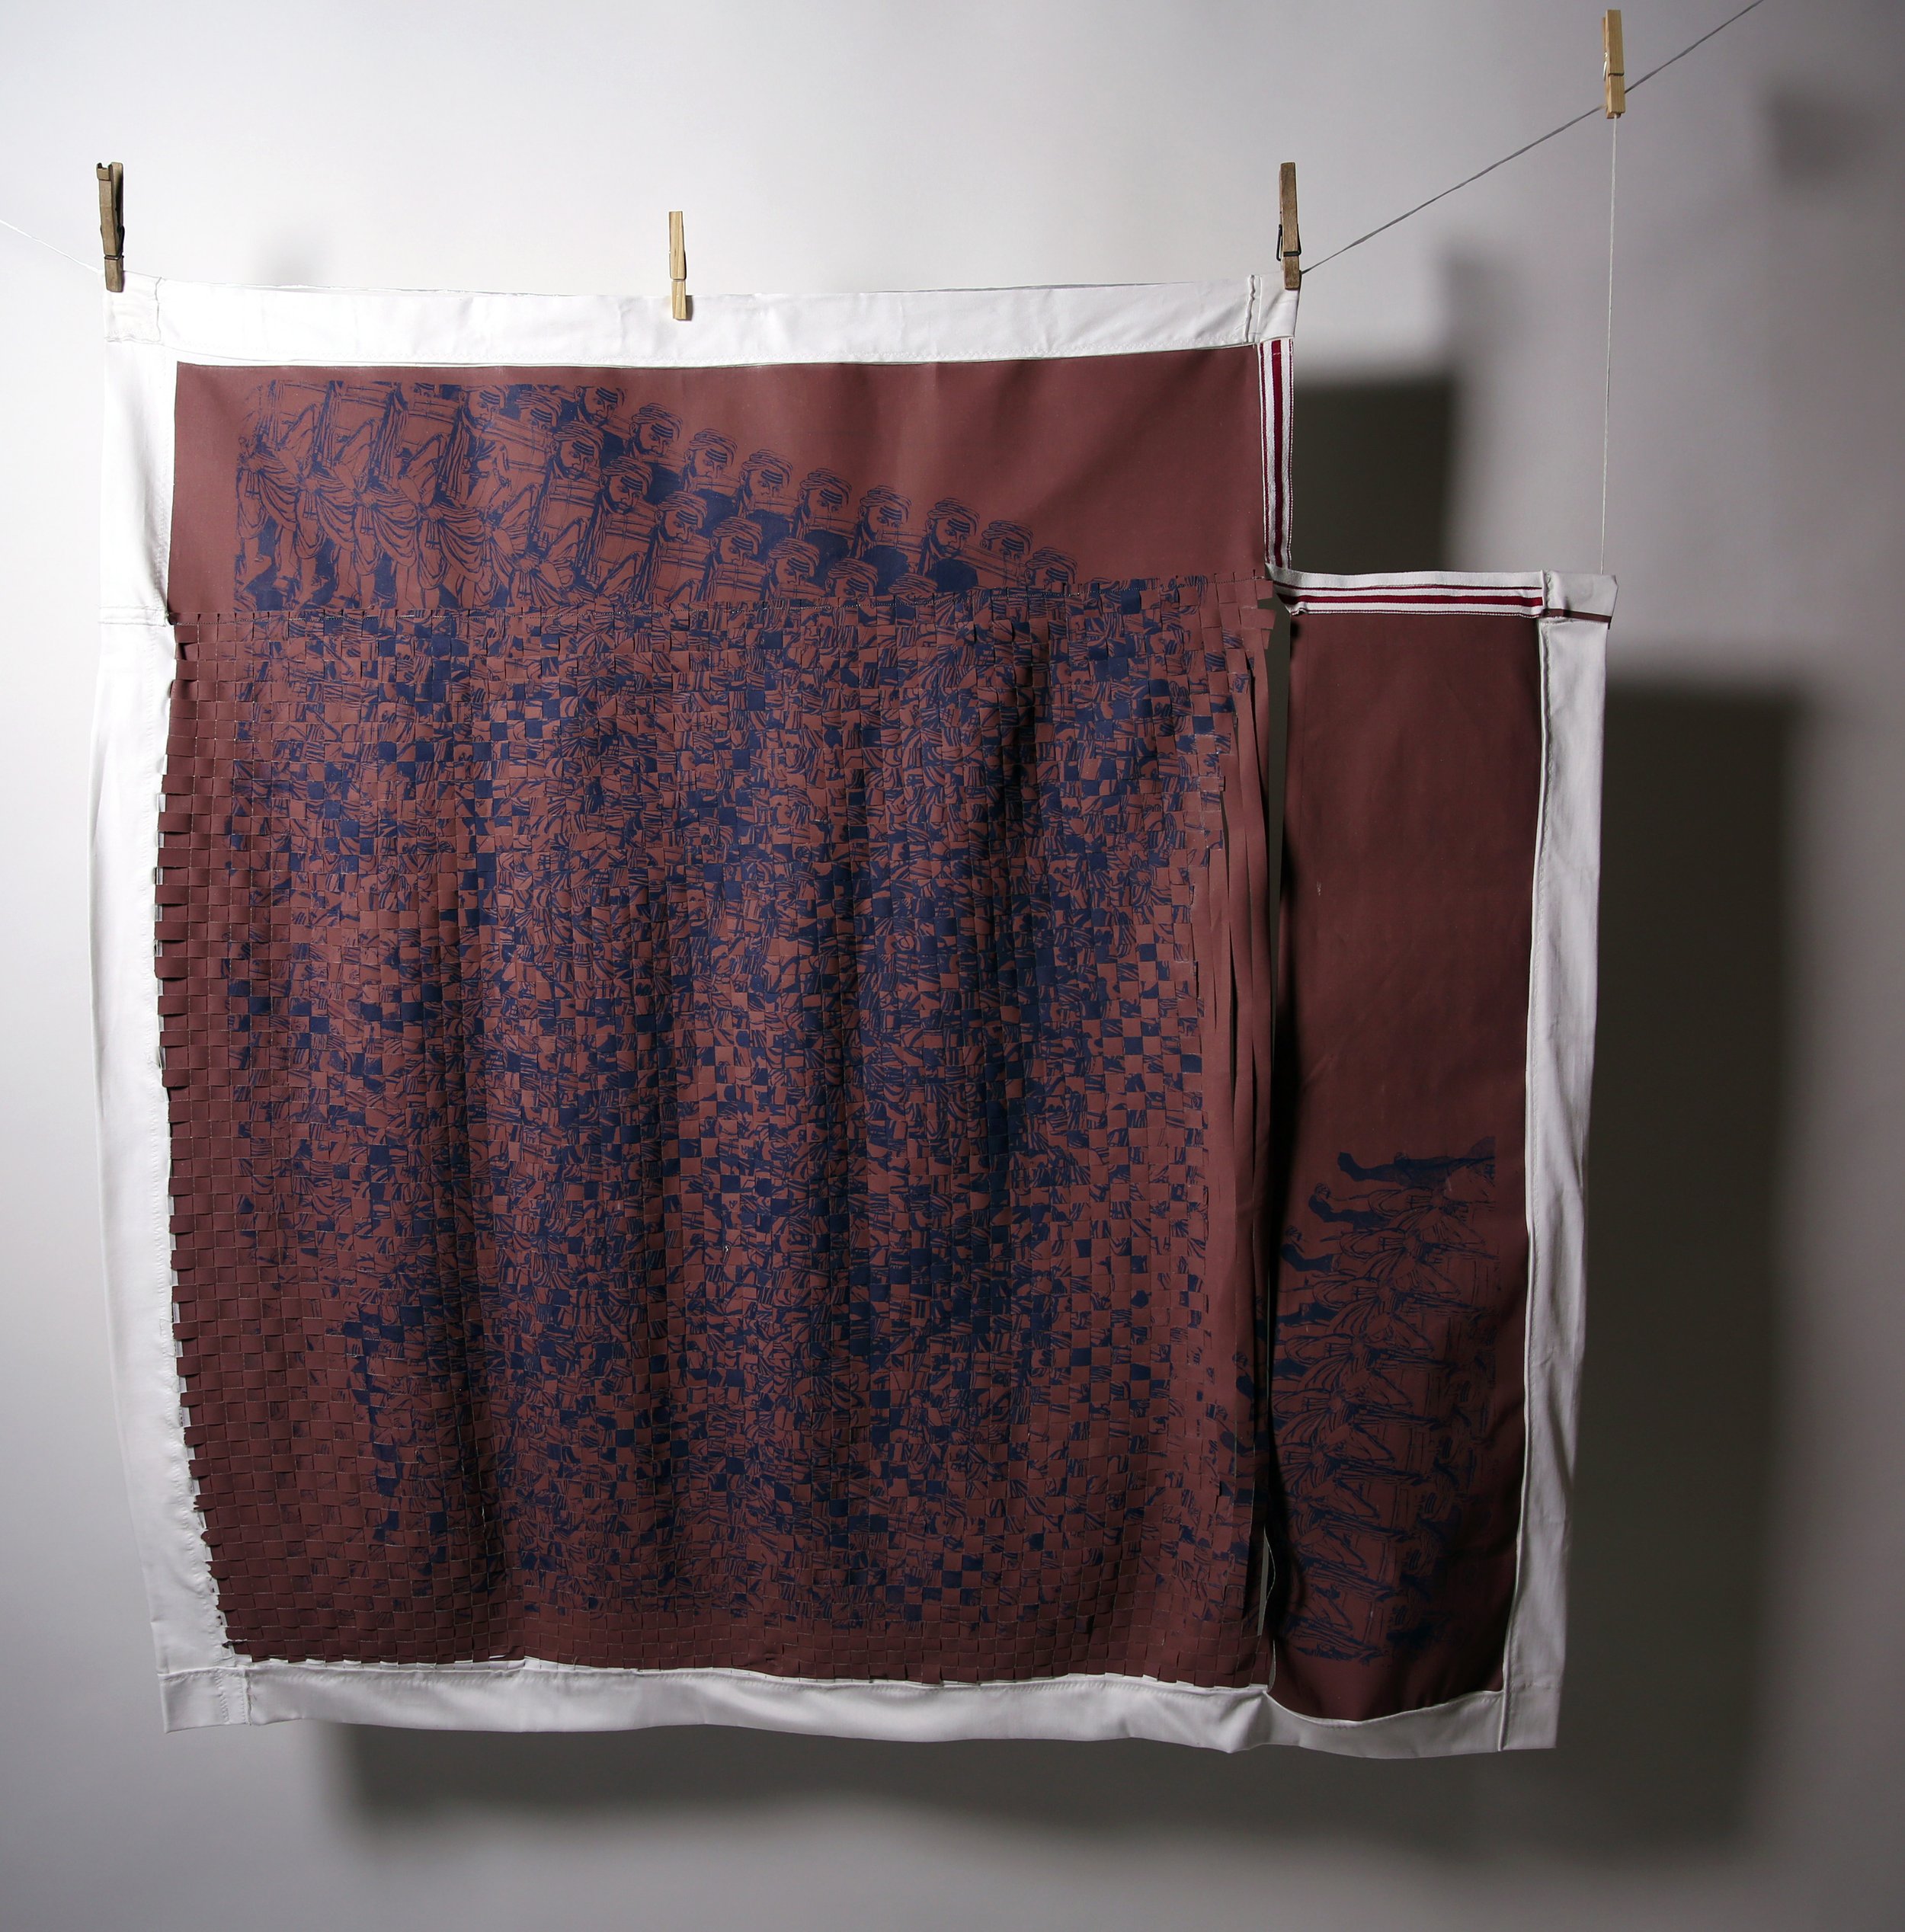    The Untouchables: 12 Hour Shift  , 2018, handwoven screenprint on cotton uniform fabric, restaurant napkin, 3’ x 3’ 